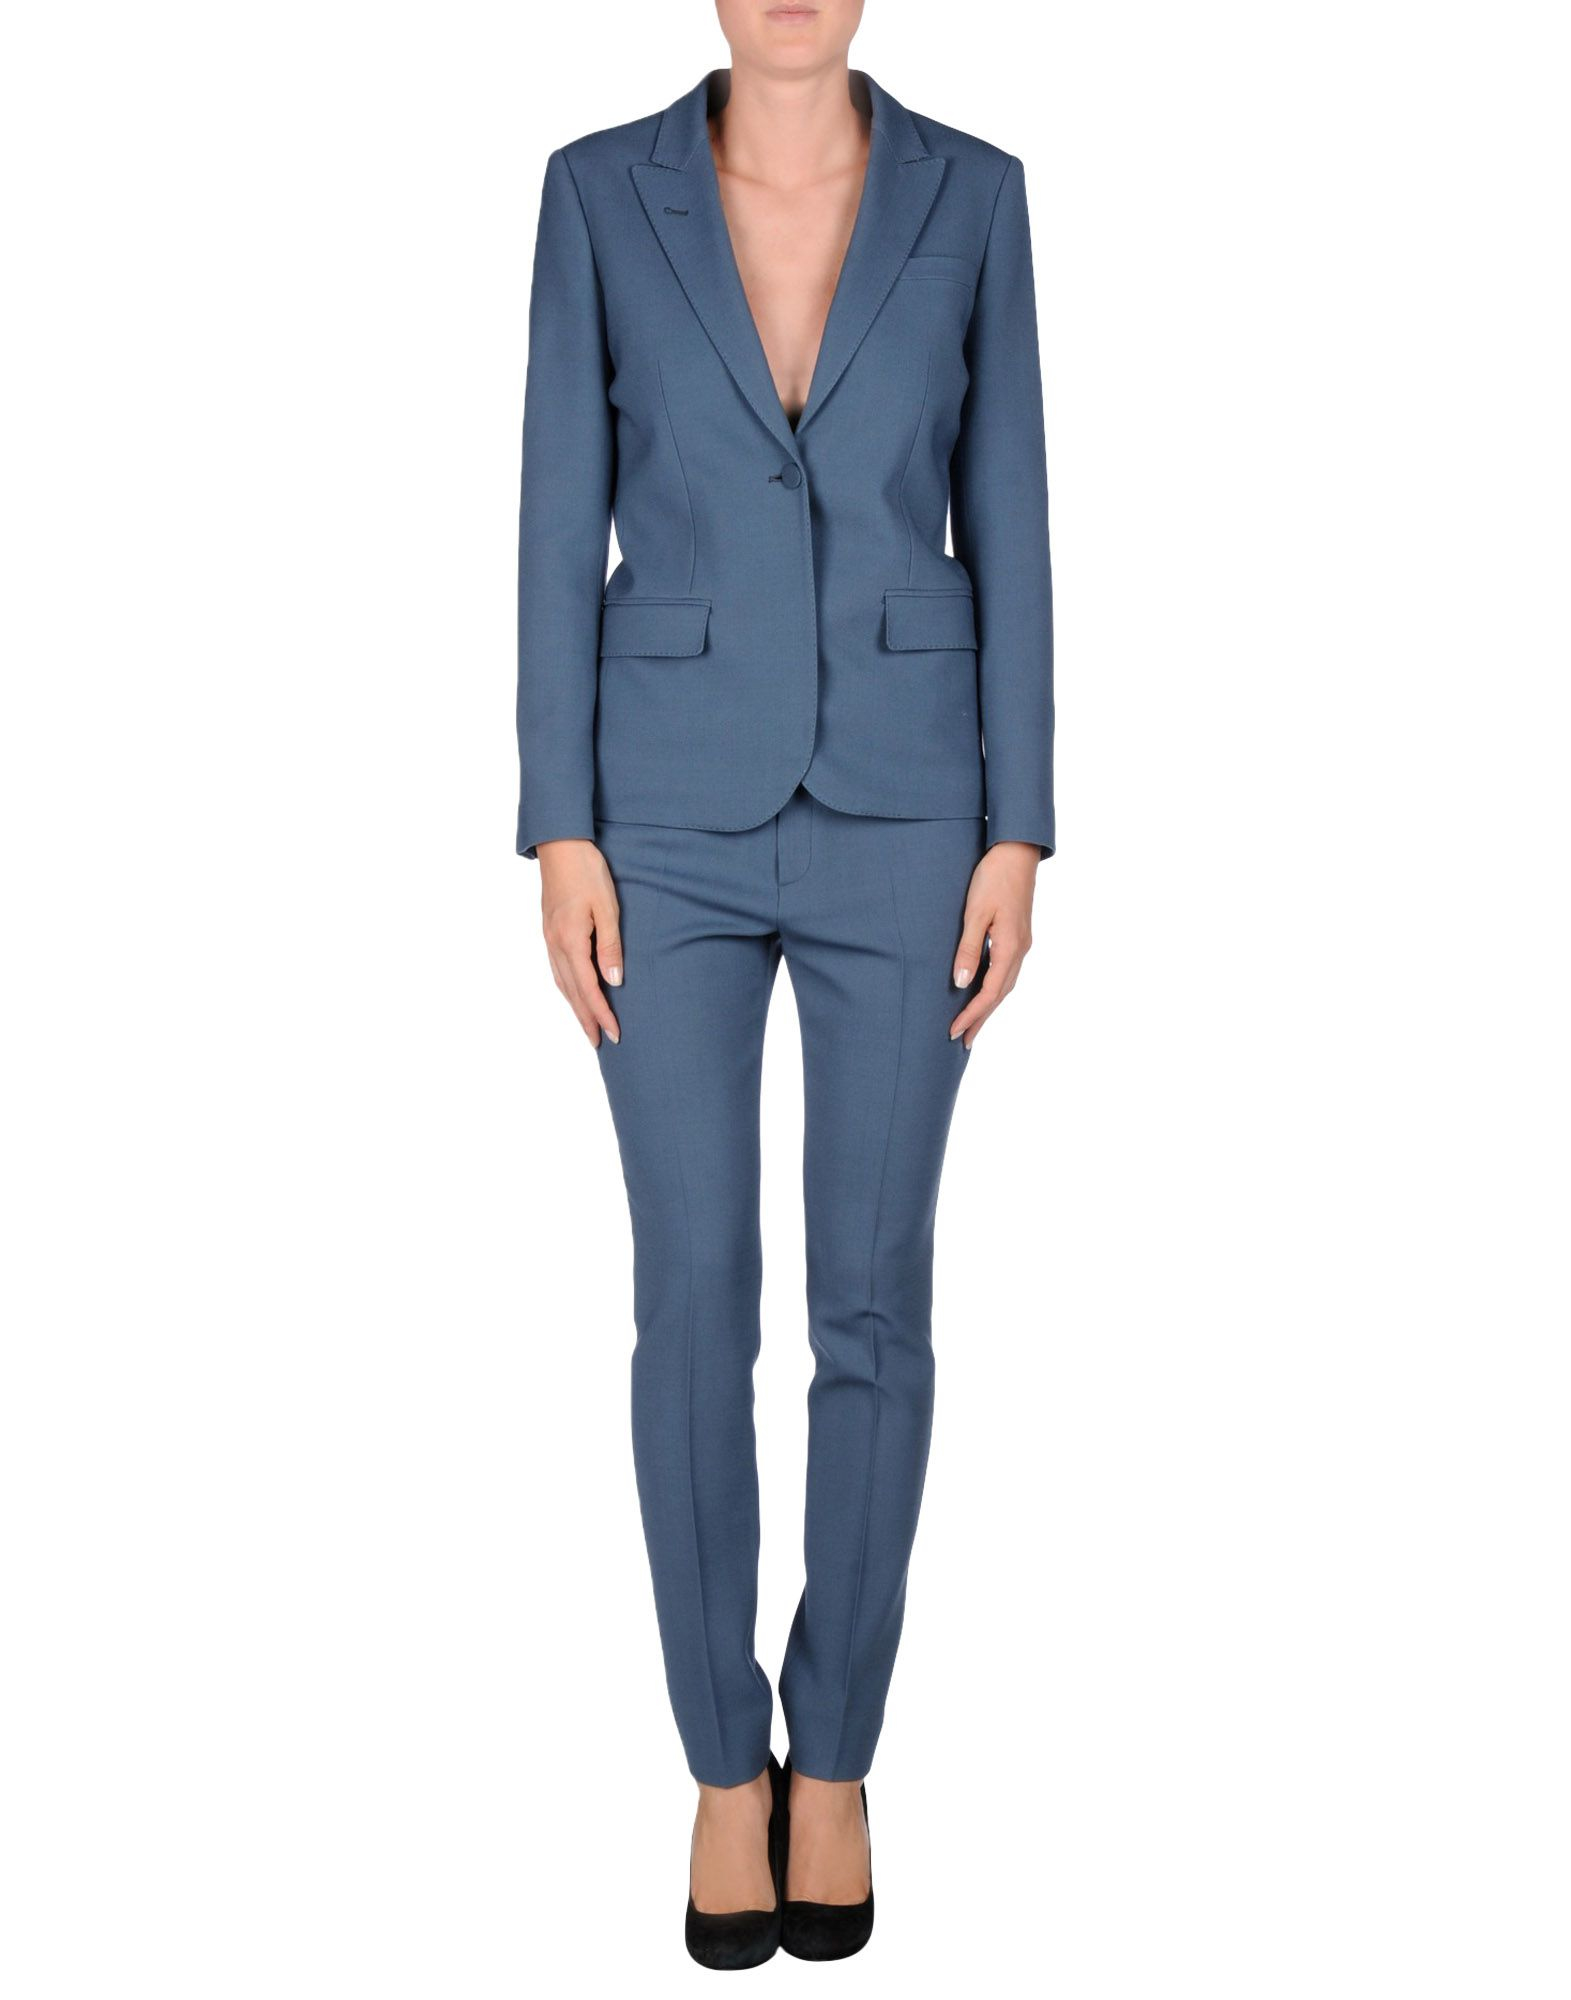 Gucci Women's Suit in Slate Blue (Blue) - Lyst